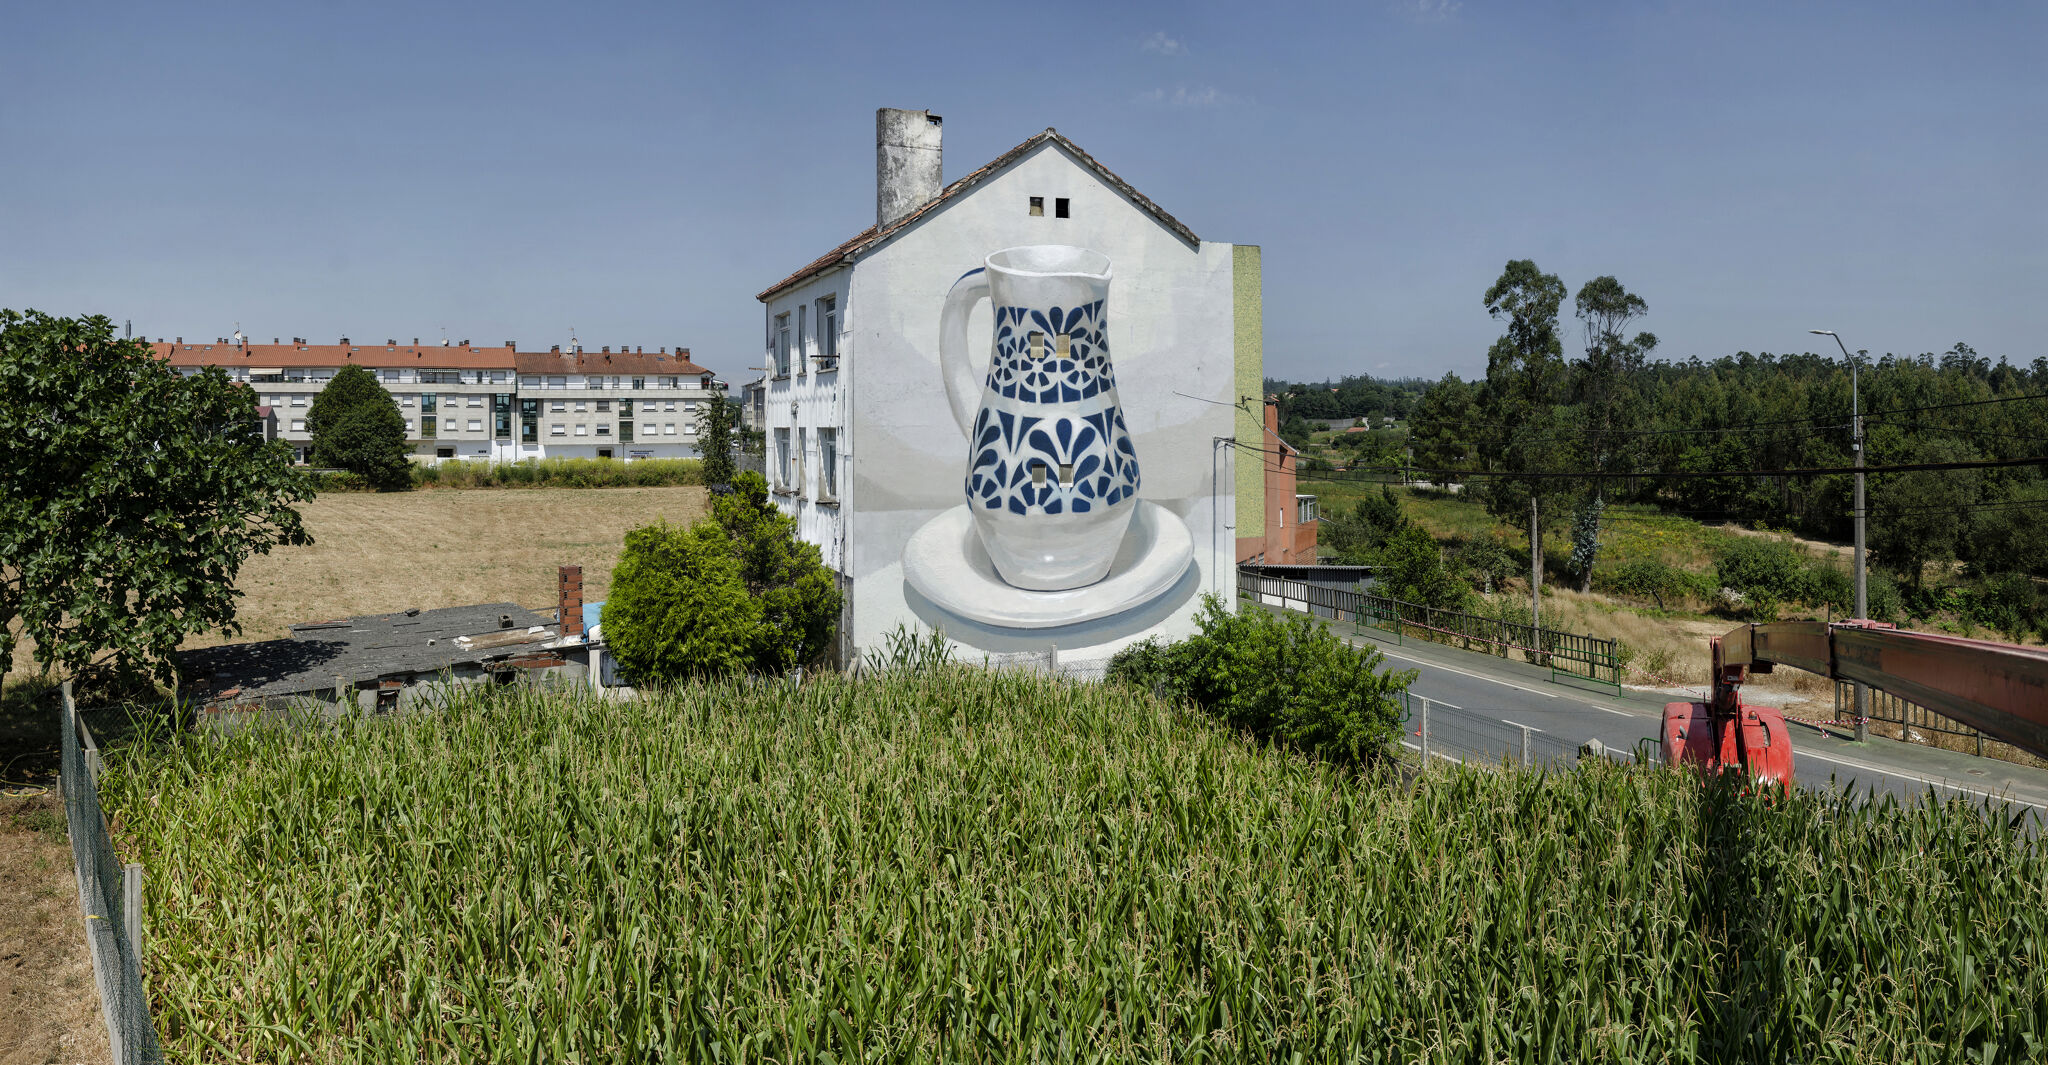 Manolo Mesa&mdash;New walll by MANOLO MESA for DESORDES CREATIVAS 2020, in Ordes (Galiza-Spain) 